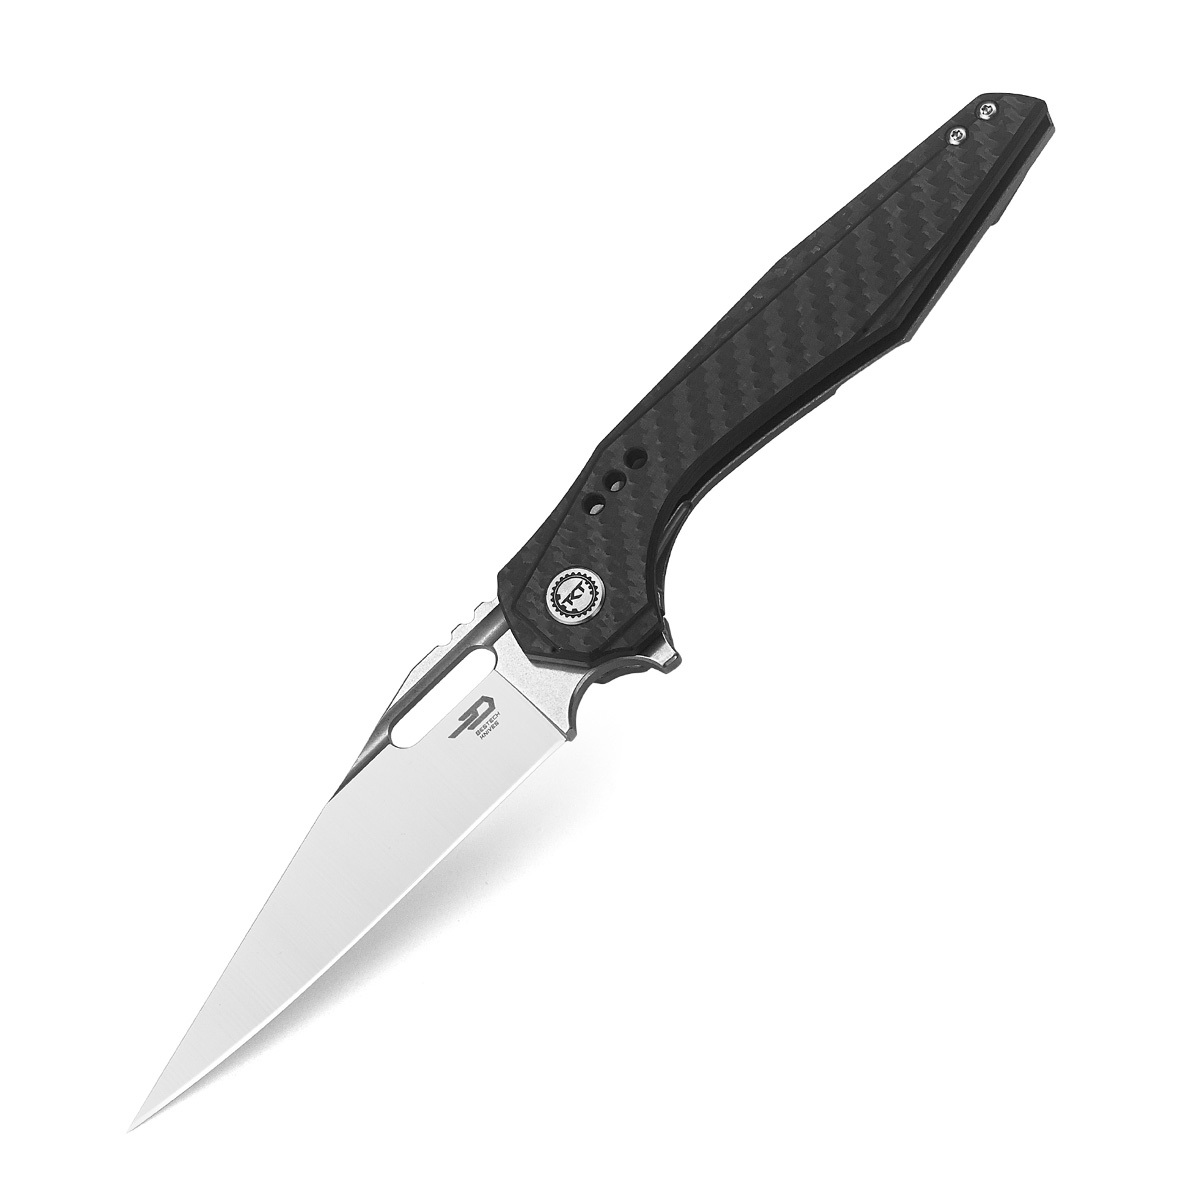 Складной нож Bestech Malware, сталь S35VN, рукоять титан/карбон складной нож bestech knives ascot d2 черно красный карбон